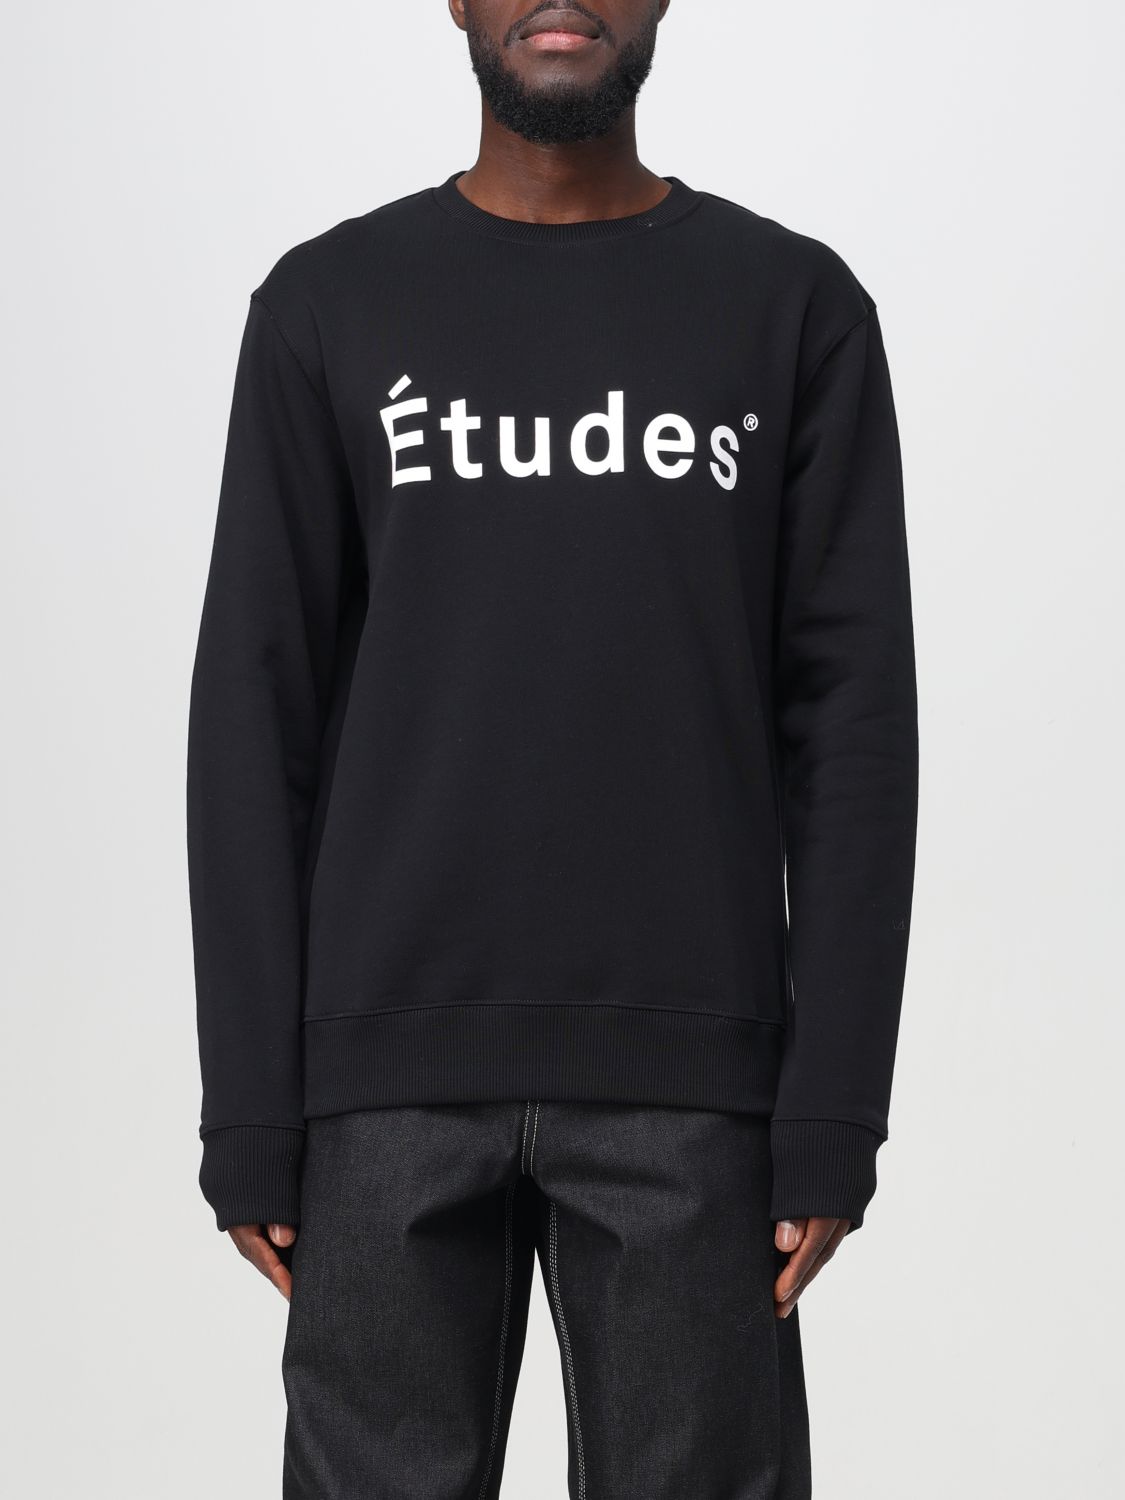 Études Sweatshirt ÉTUDES Men colour Black